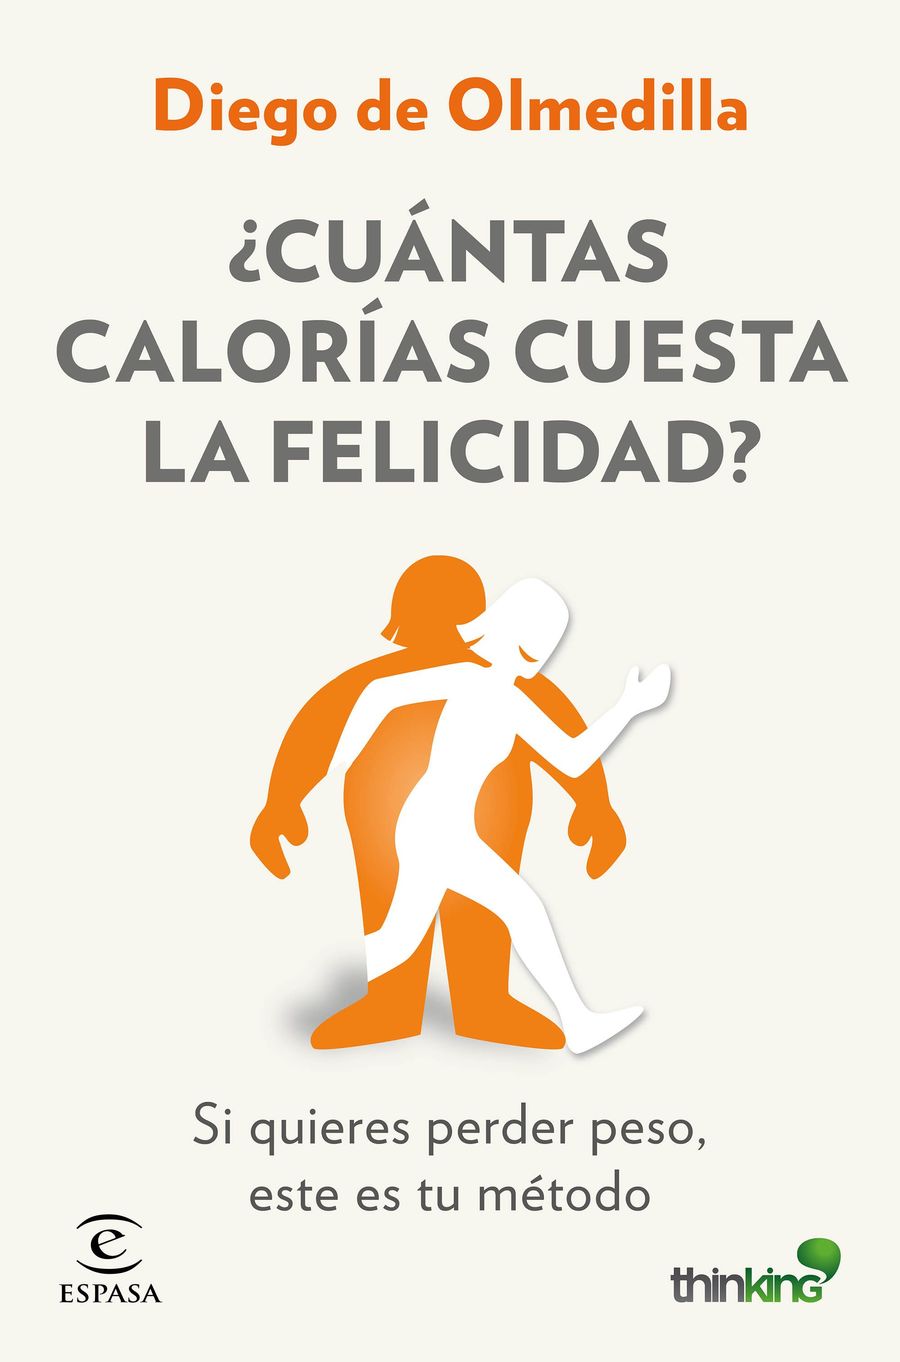 imagen 2 de Diego de Olmedilla, creador del Método Thinking: ¿Cuántas calorías cuesta la felicidad?